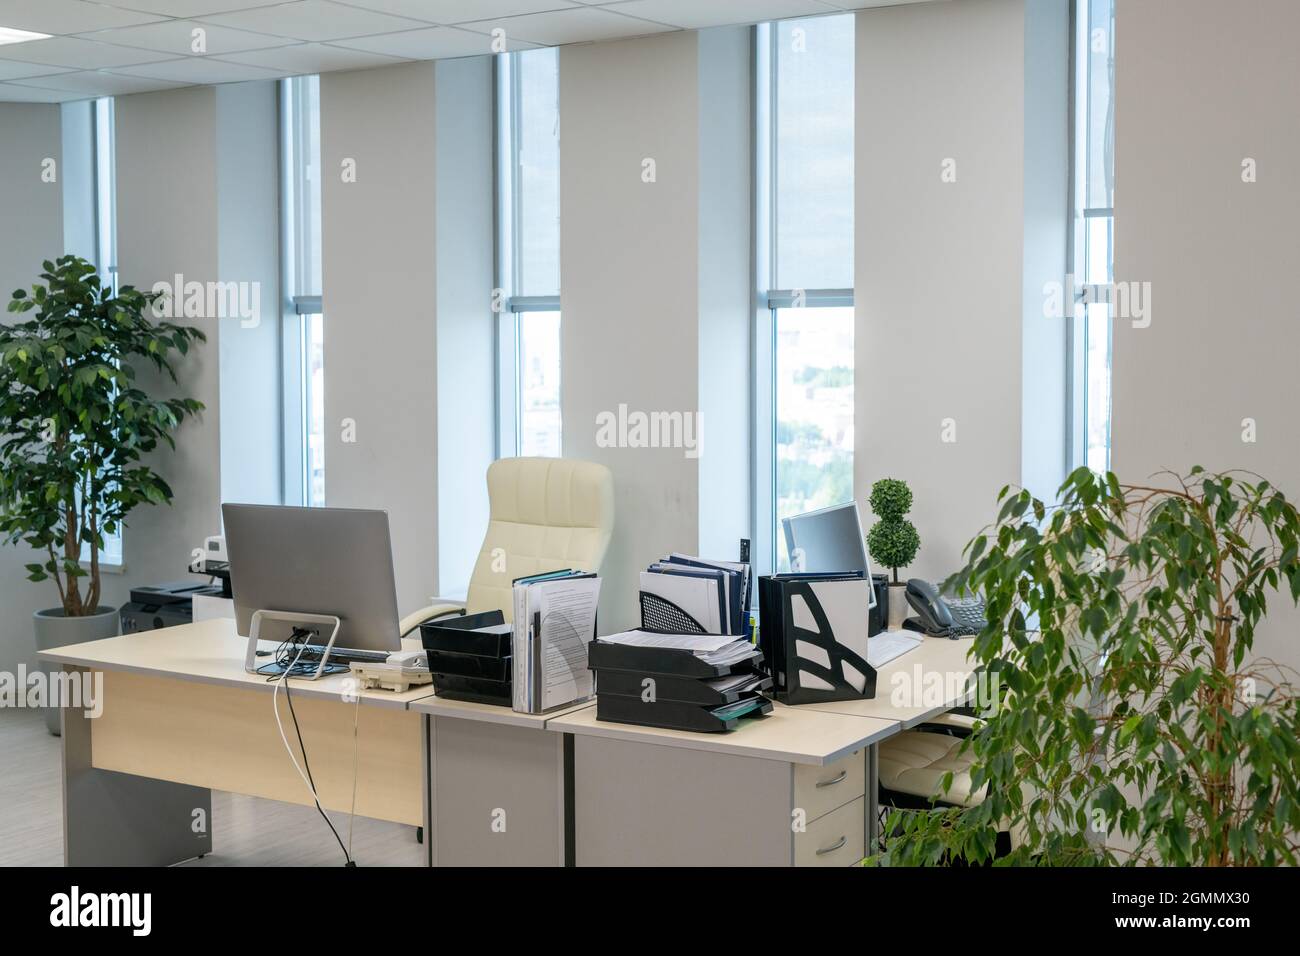 Deux bureaux avec écrans d'ordinateur et documents se tenant le long des  fenêtres dans un grand bureau à espace ouvert Photo Stock - Alamy